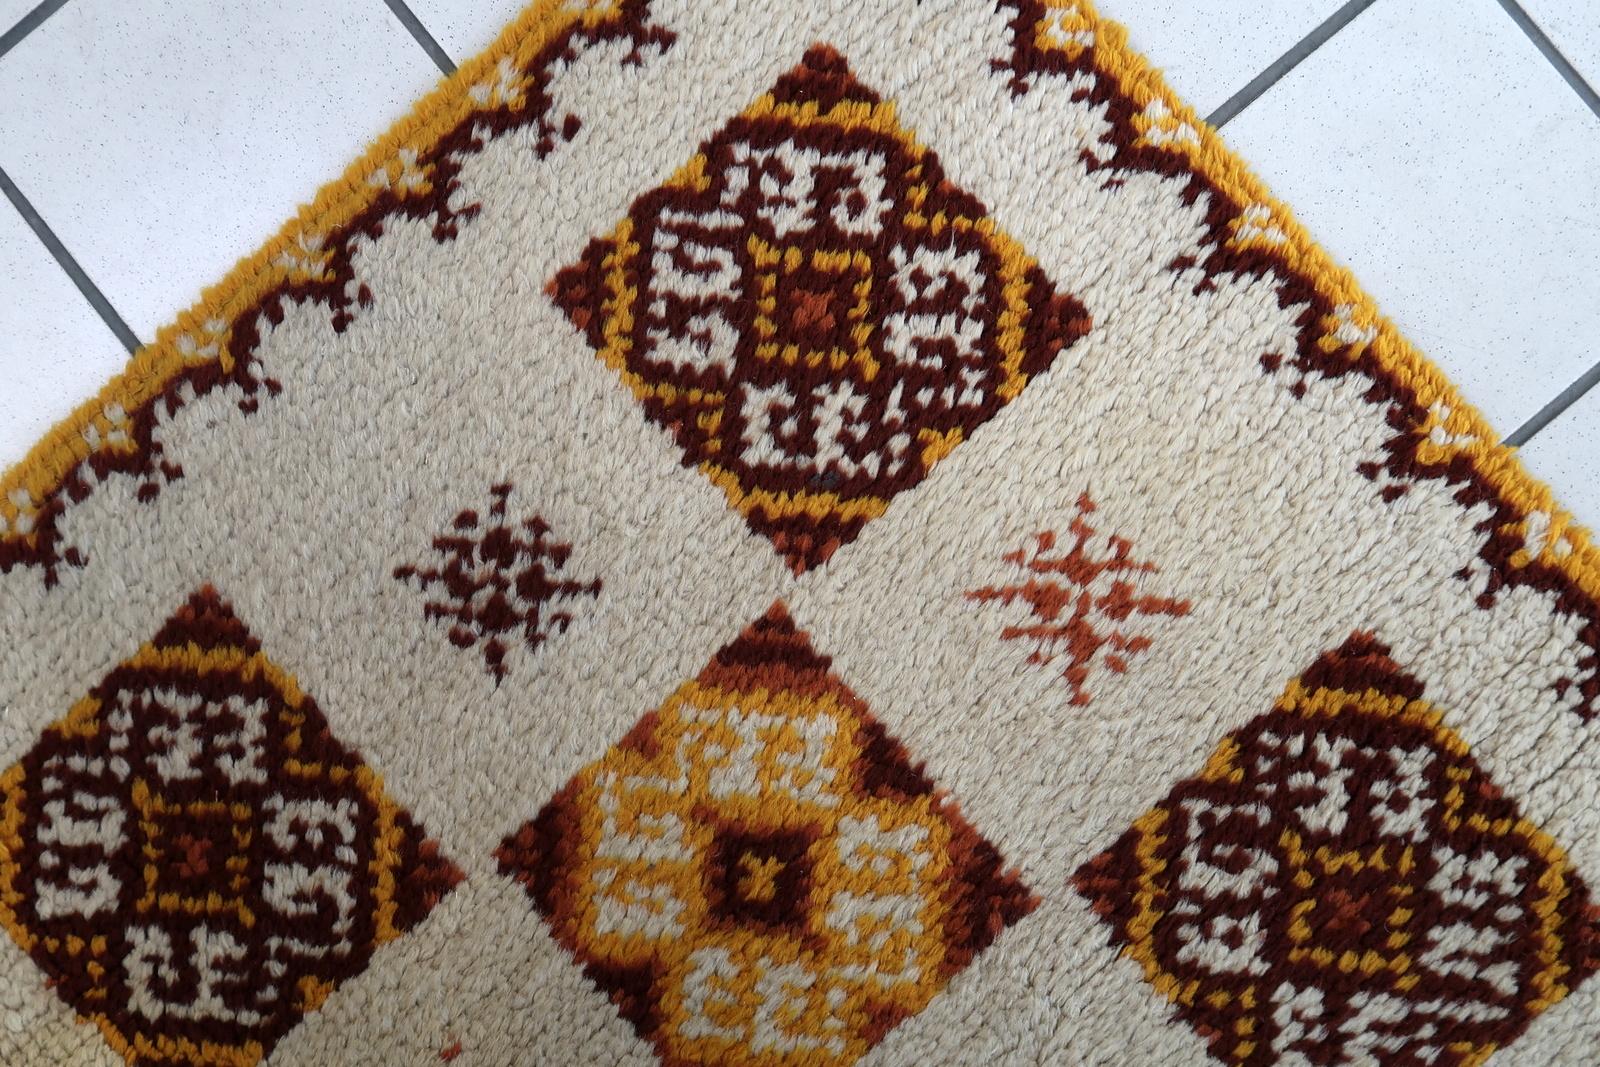 Vintage Französisch Savonnerie Teppich in beige Farbe. Der Teppich wurde Ende des 20. Jahrhunderts aus Wolle hergestellt. Es befindet sich in einem guten Originalzustand.

-zustand: original gut,

-etwa: 1960er Jahre,

-größe: 2,5' x 4,8'